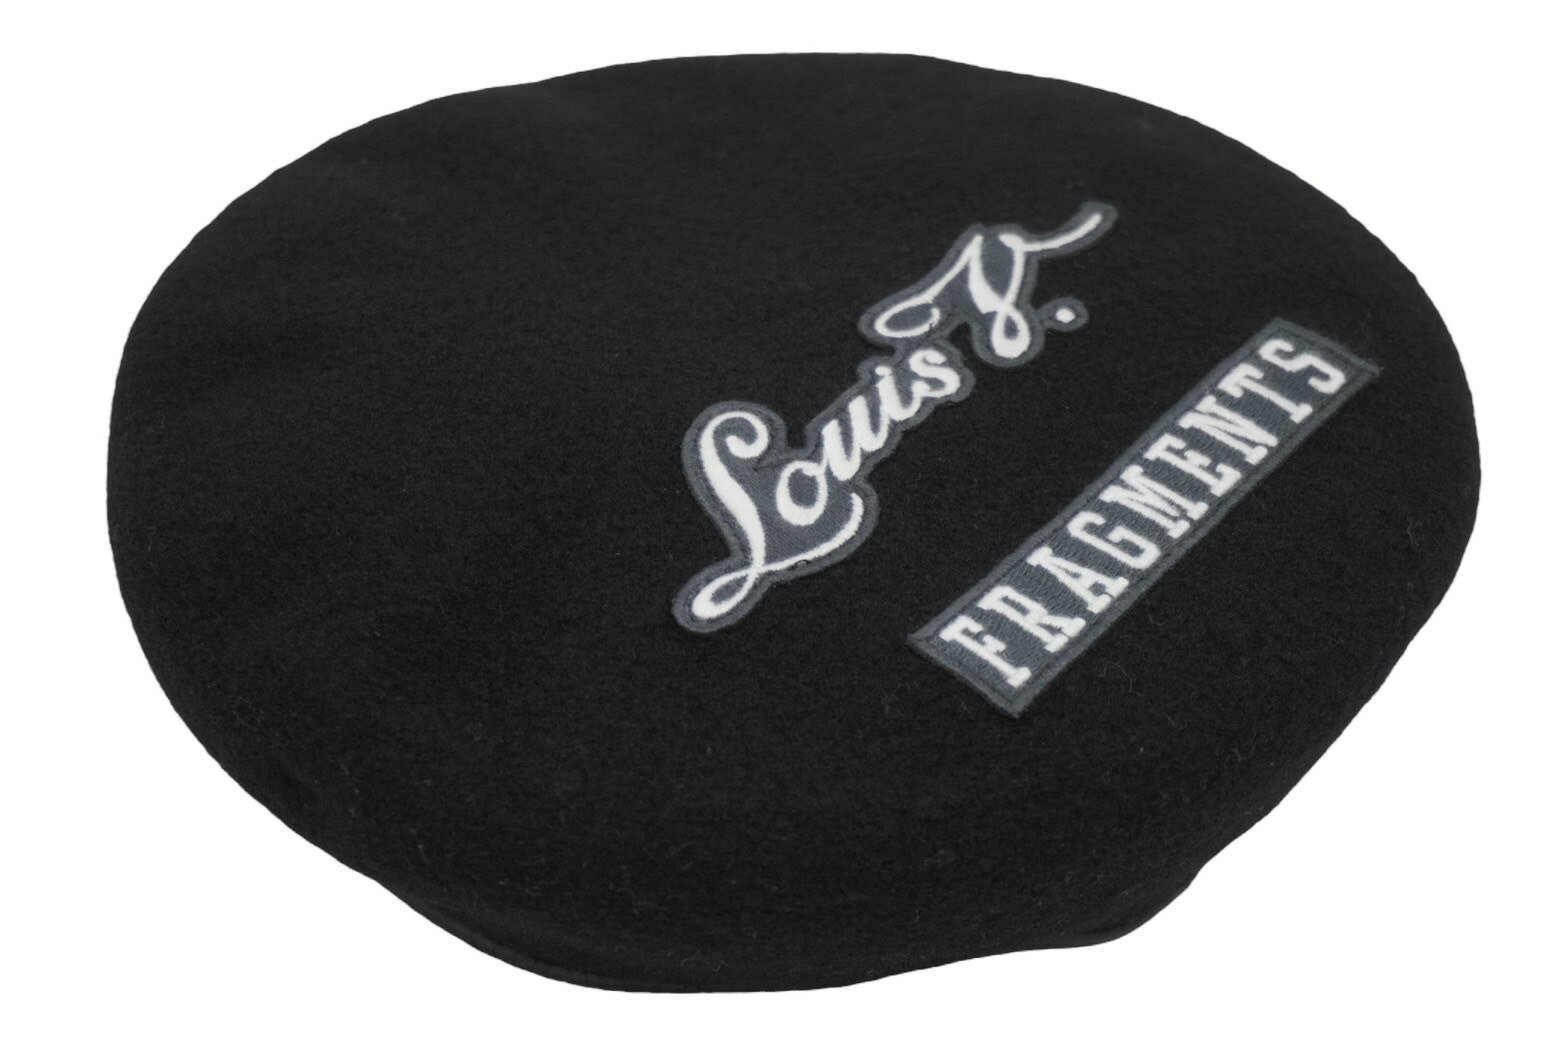 LOUIS VUITTON ルイヴィトン FRAGMENT フラグメント パリストーキョーワッペンベレー帽 M73748 17SS ブラック 美品 中古 55365